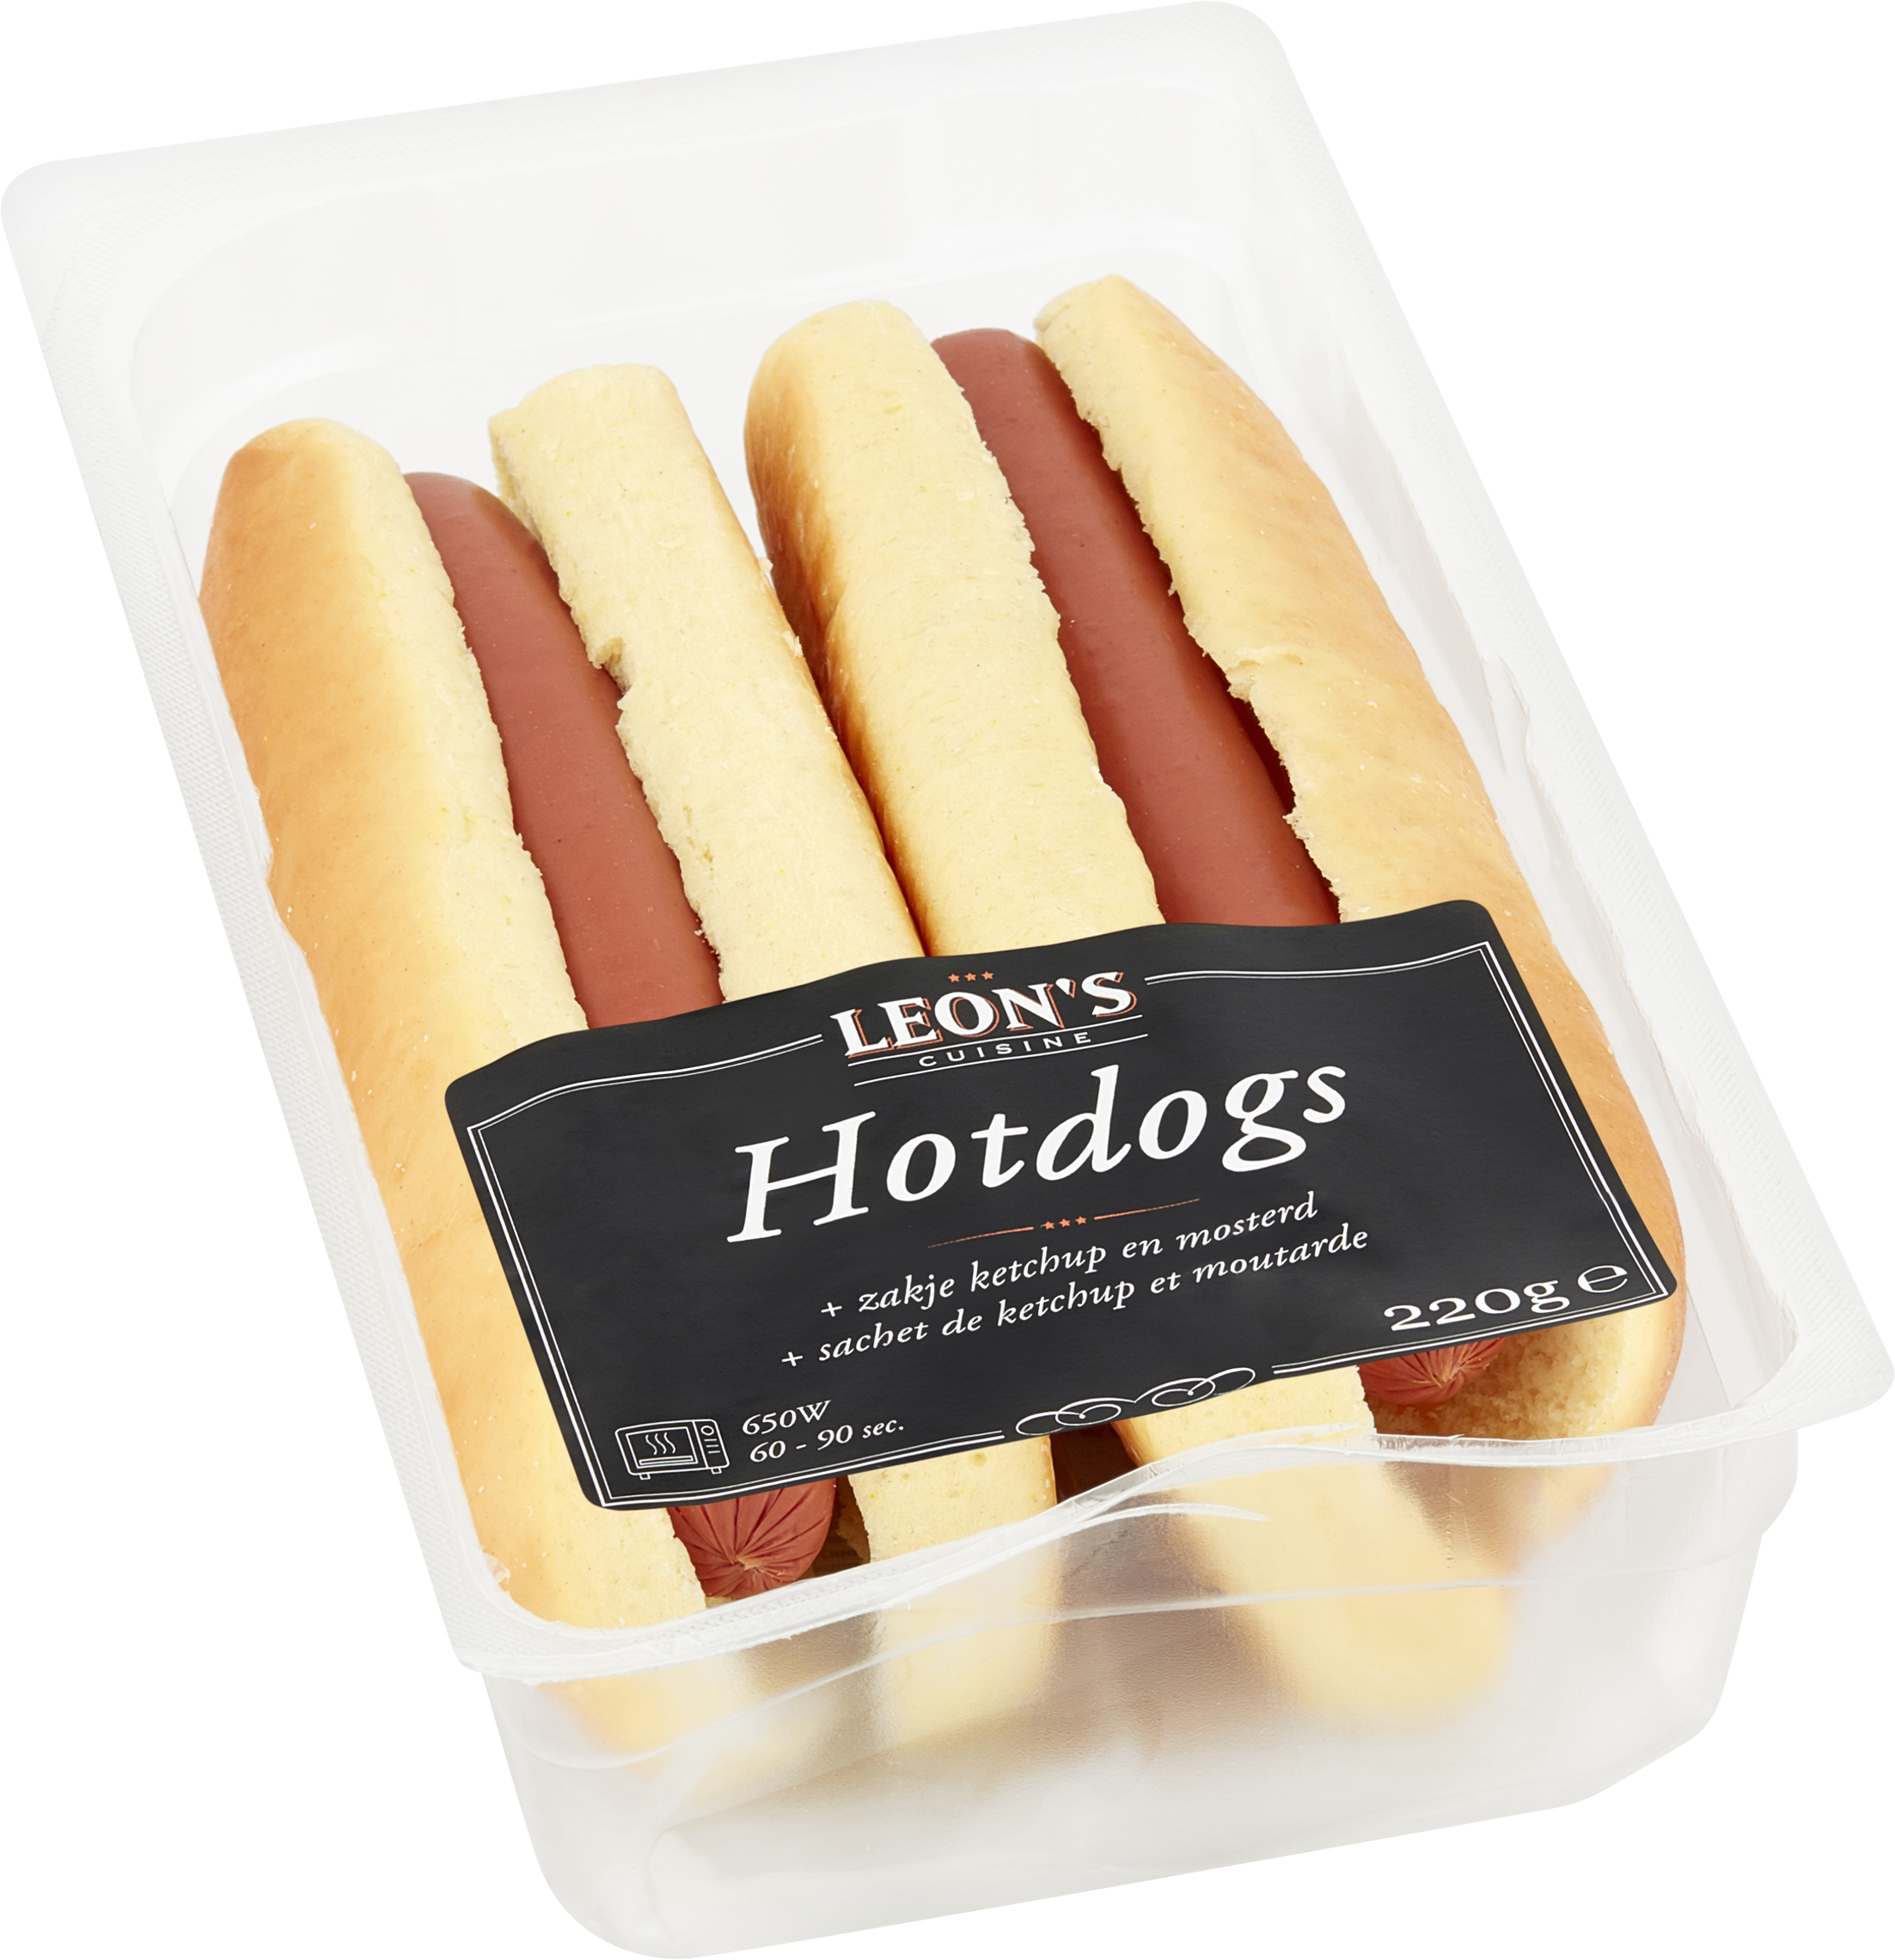 Hotdogs Kip Poulet Leon’s Cuisine (2)